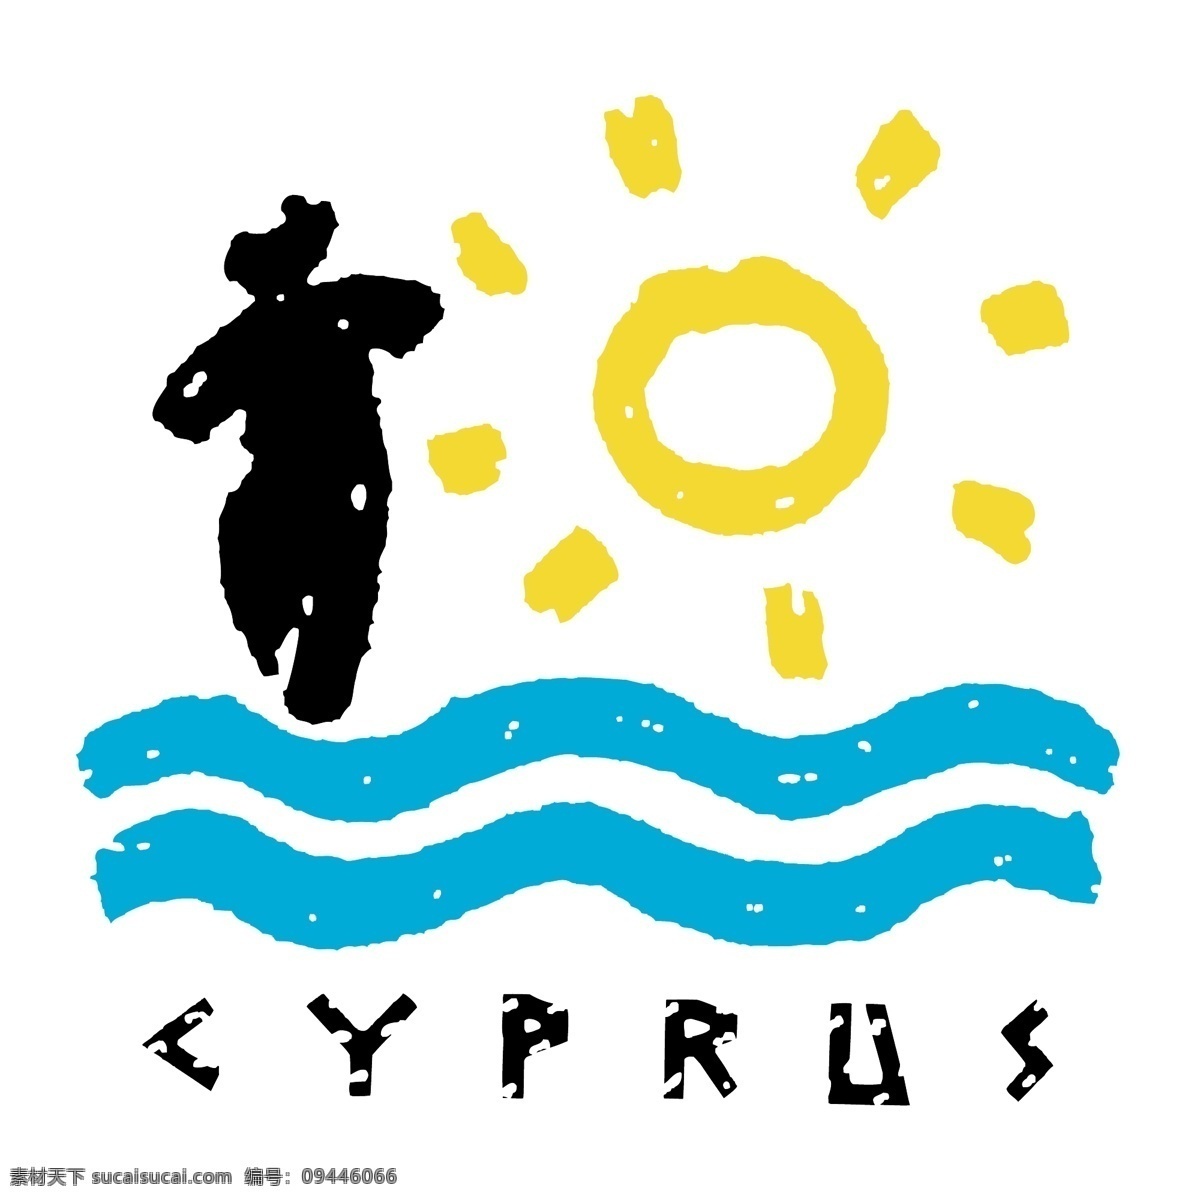 塞浦路斯 矢量标志下载 免费矢量标识 商标 品牌标识 标识 矢量 免费 品牌 公司 白色